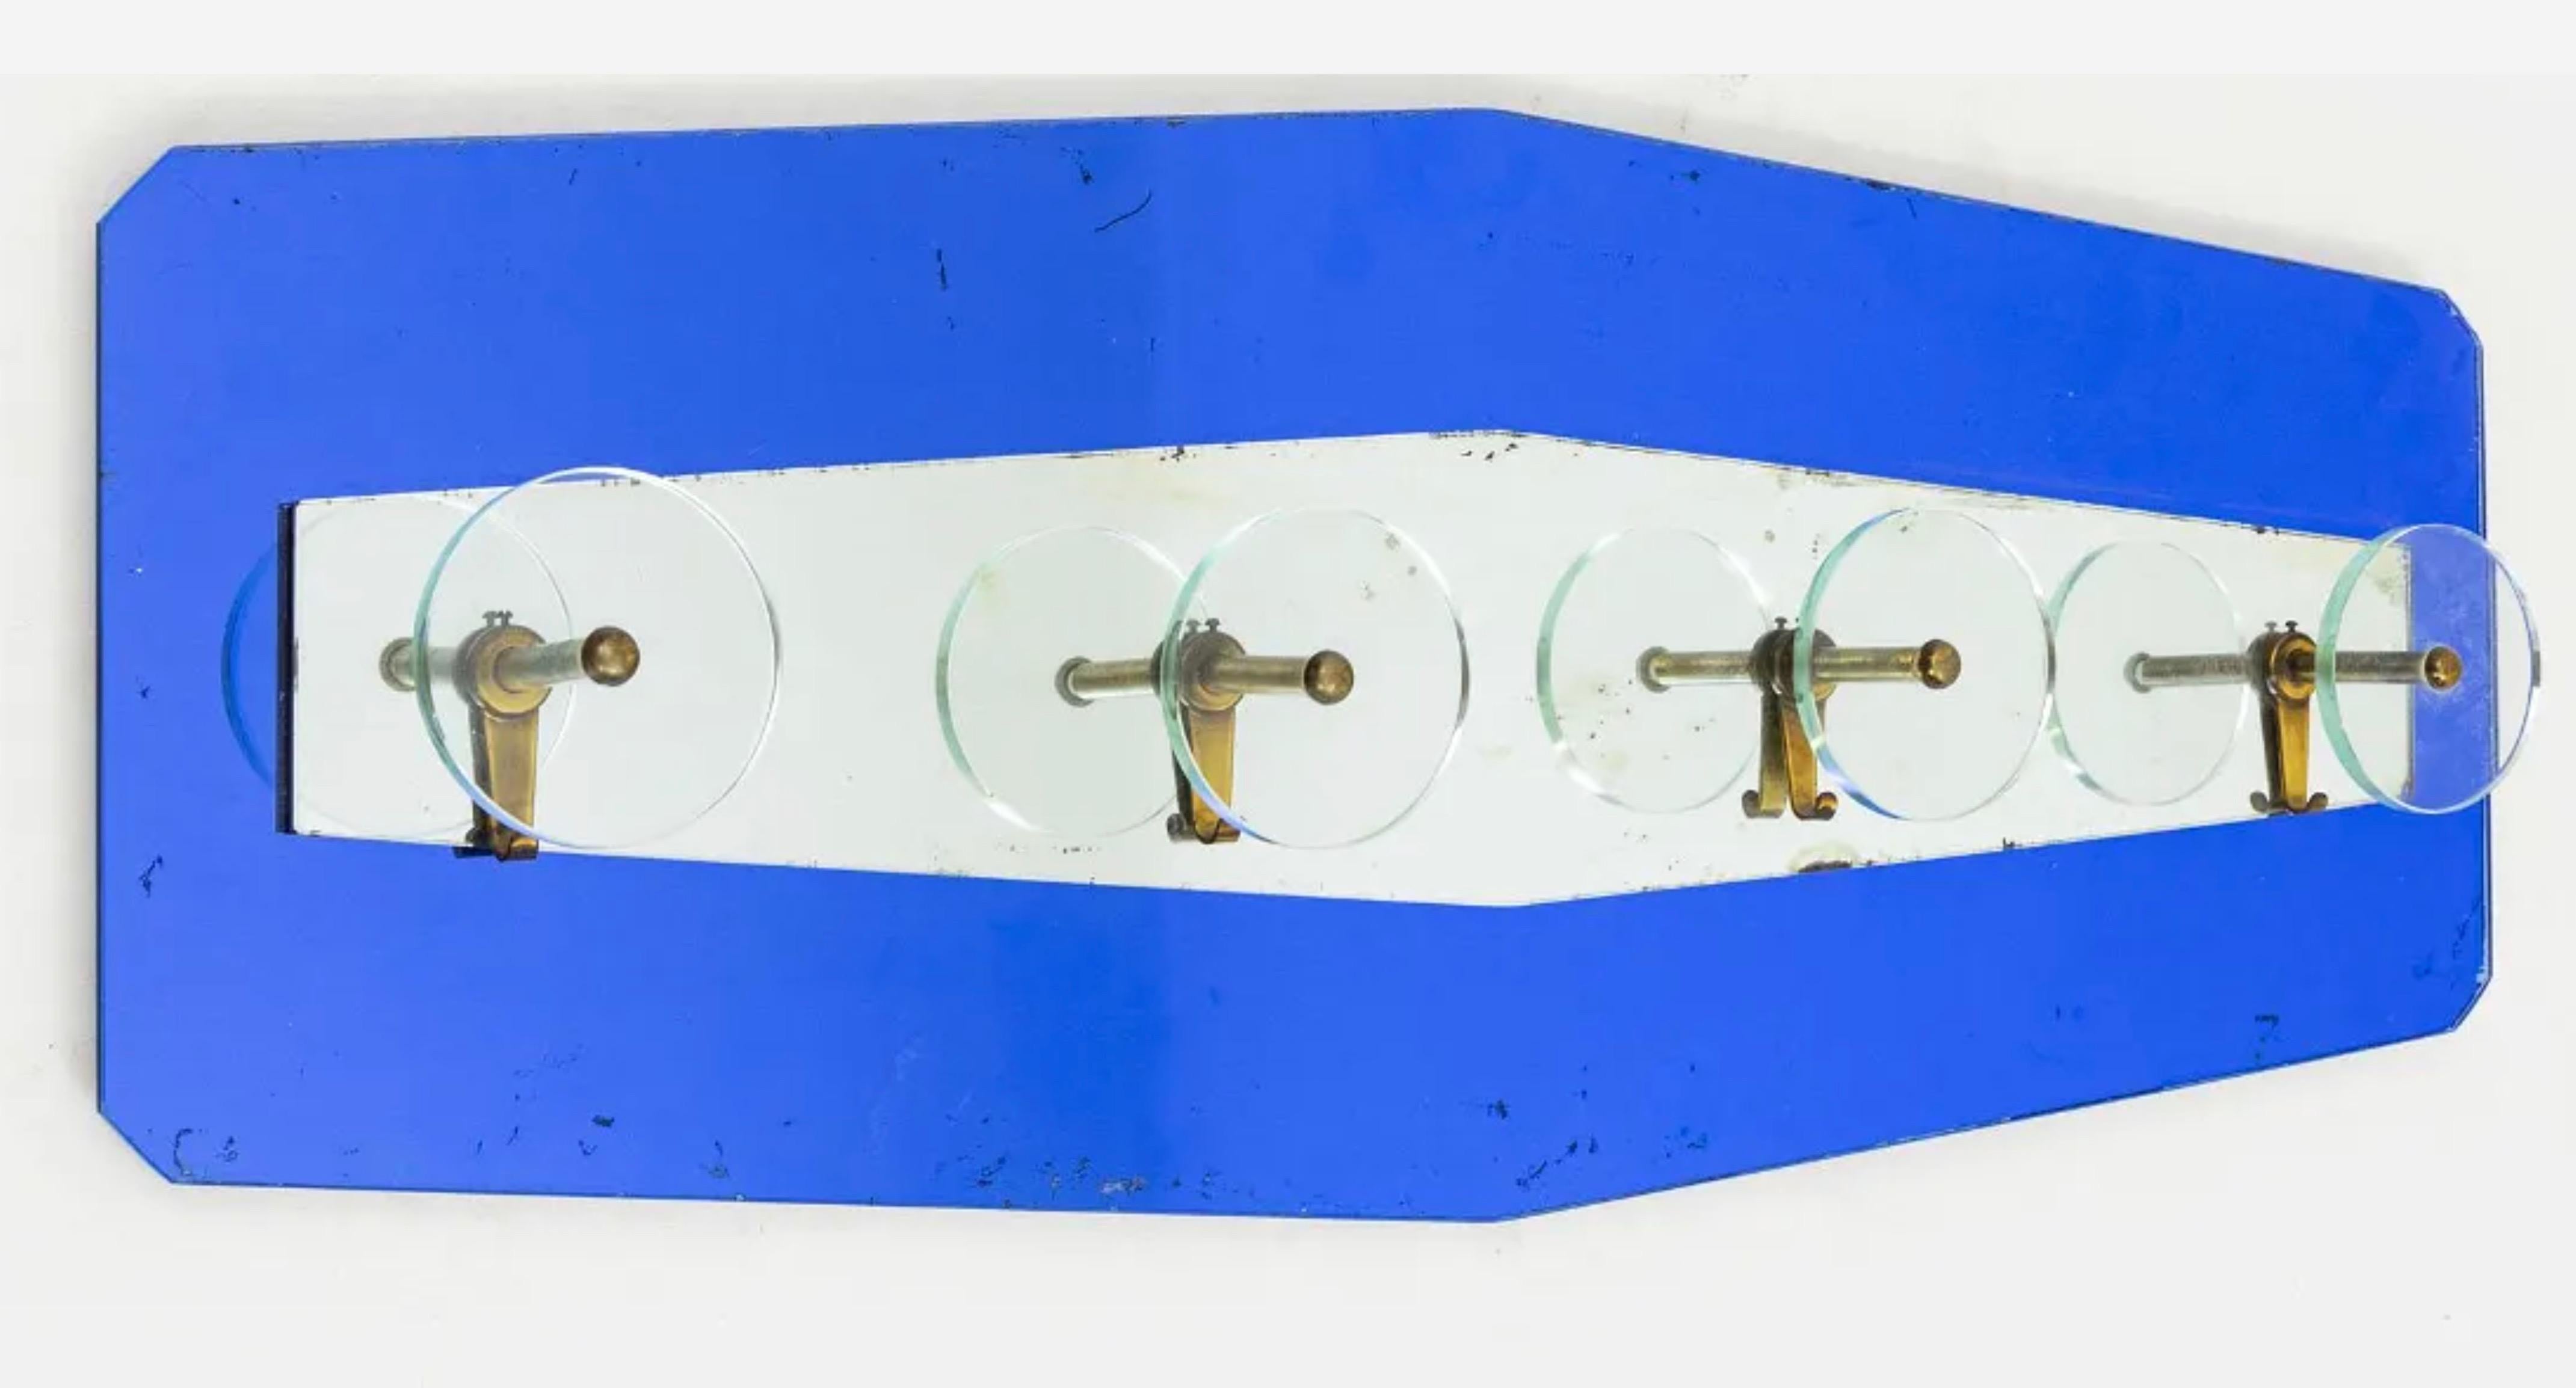 Porte-manteau mural des années 1950 de style Coates en panneaux en forme de diamant en miroir bleu cobalt et miroir argenté montés avec quatre crochets en laiton massif et cristal épais.

Documenté : Davide Alaimo, Cristal-Art, La lavorazione